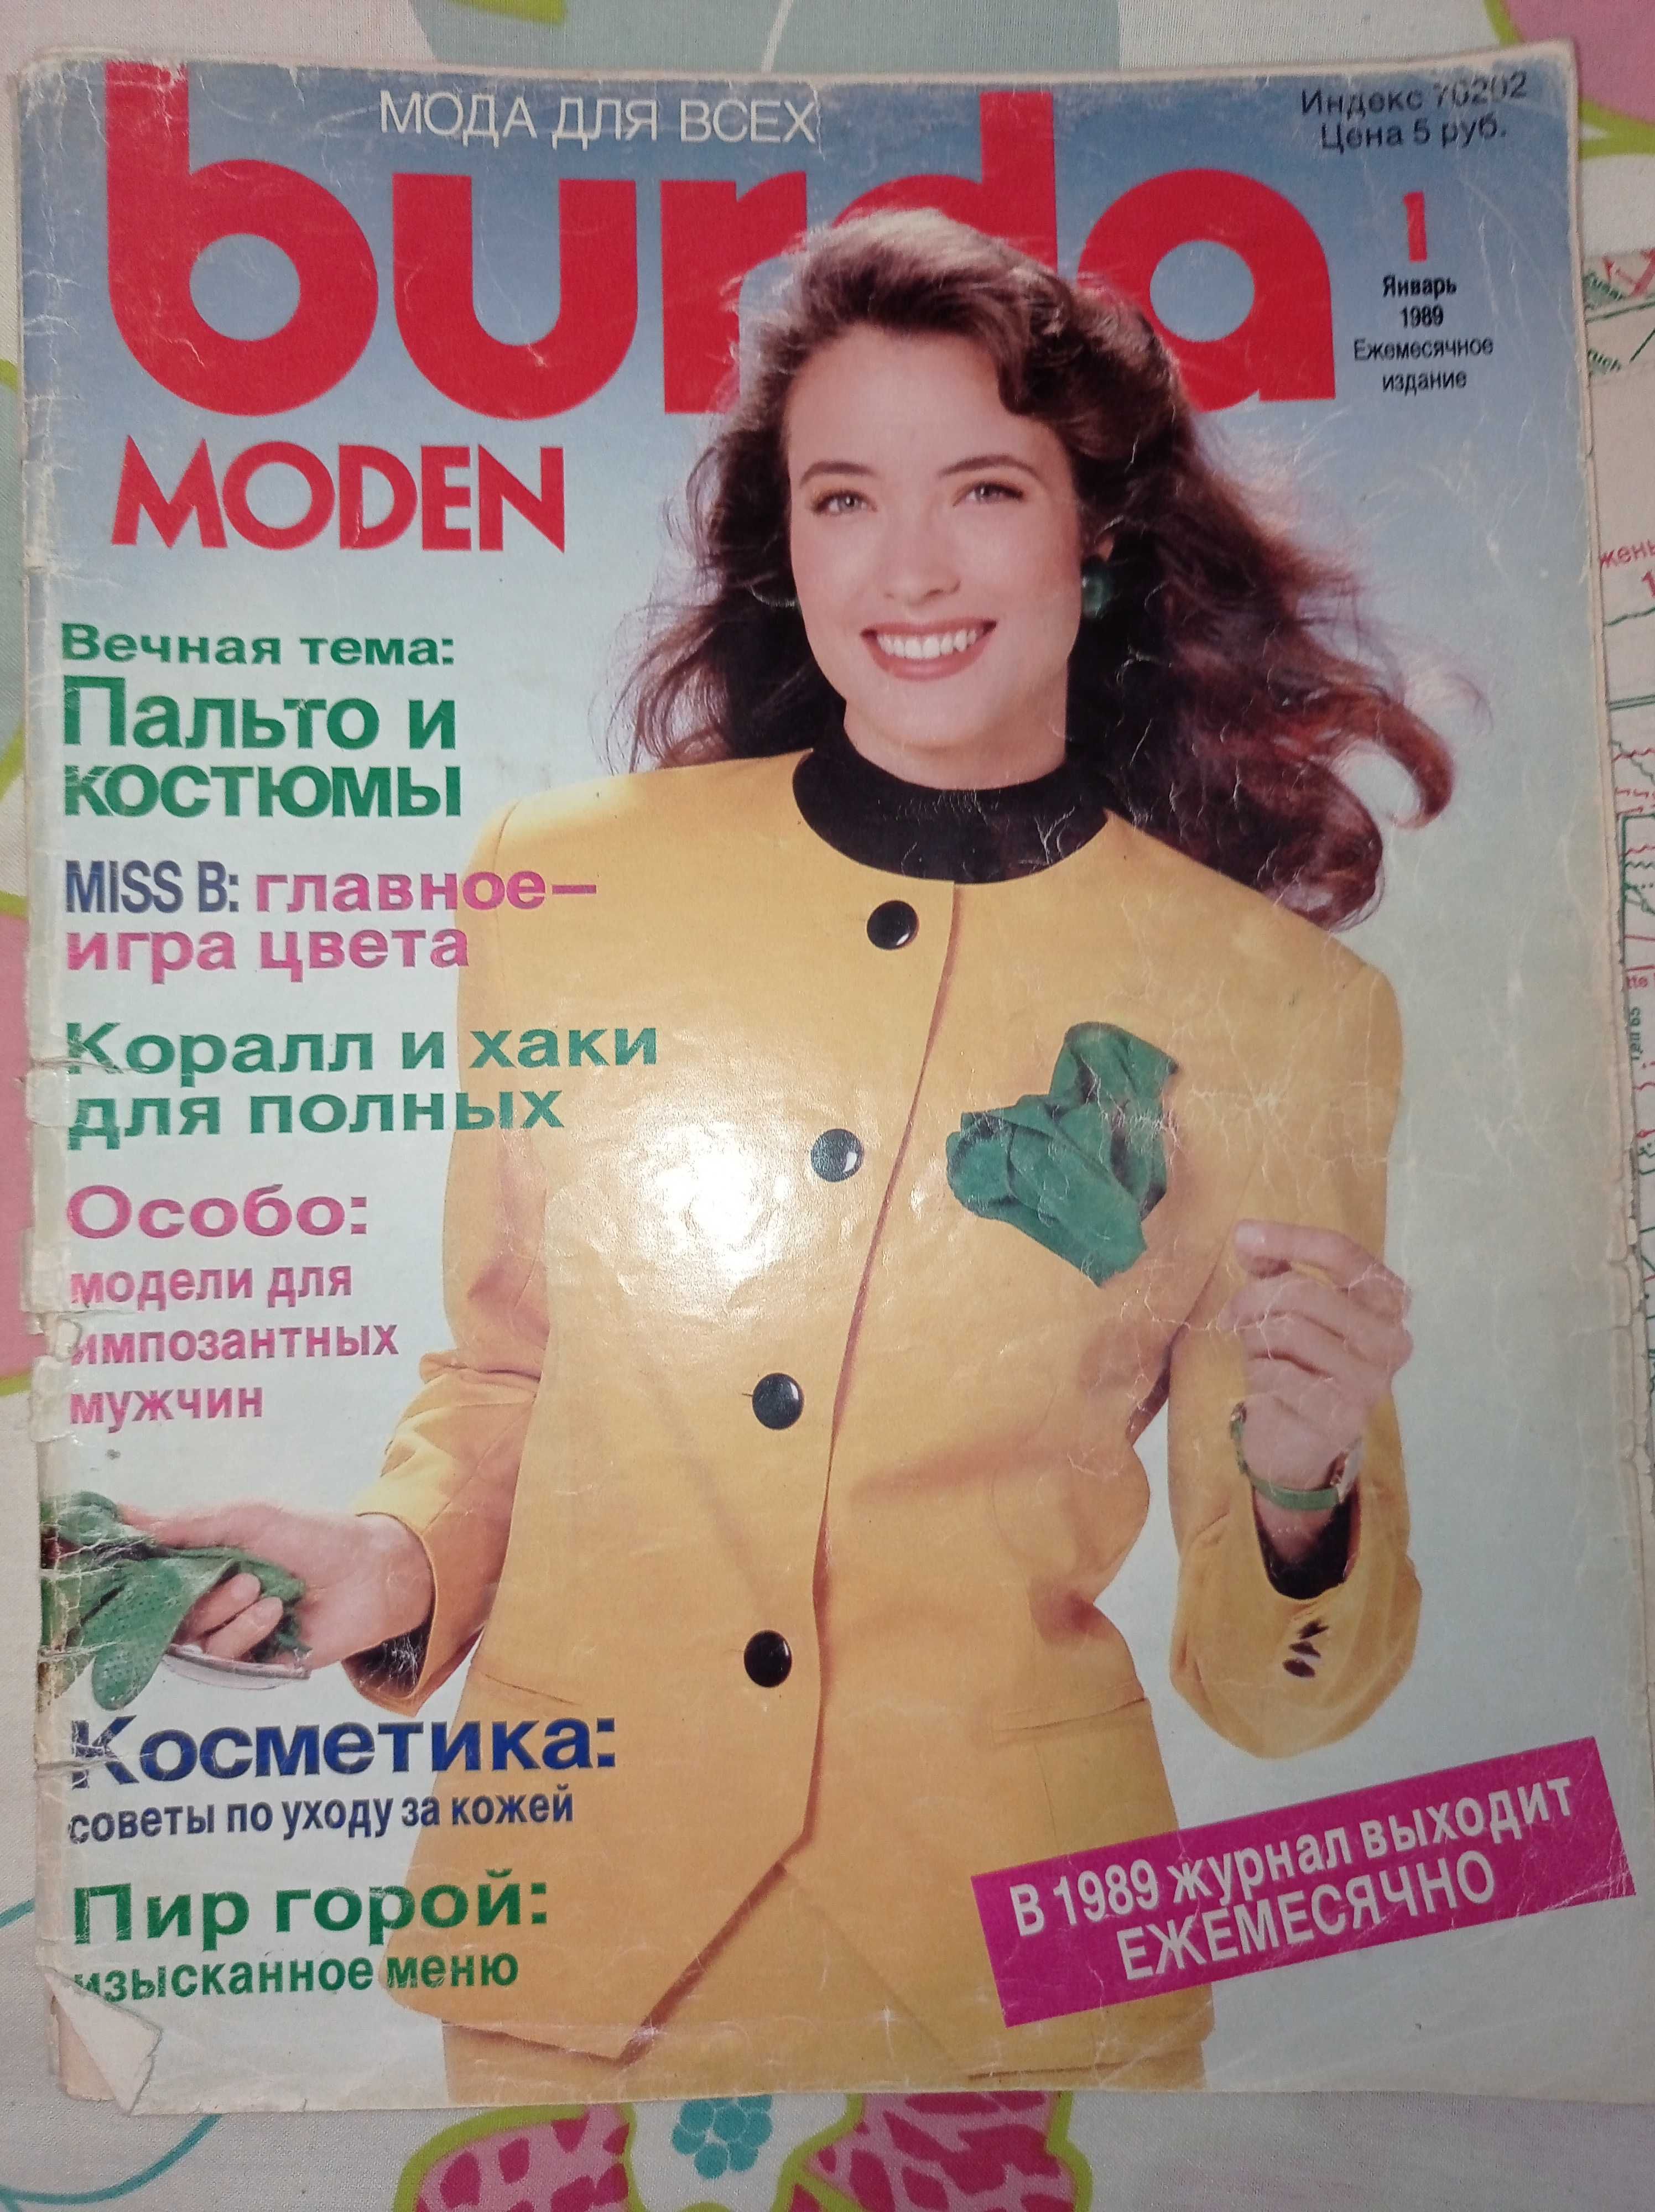 Выкройки из журнала "Бурда моден" 1989 года выпуска